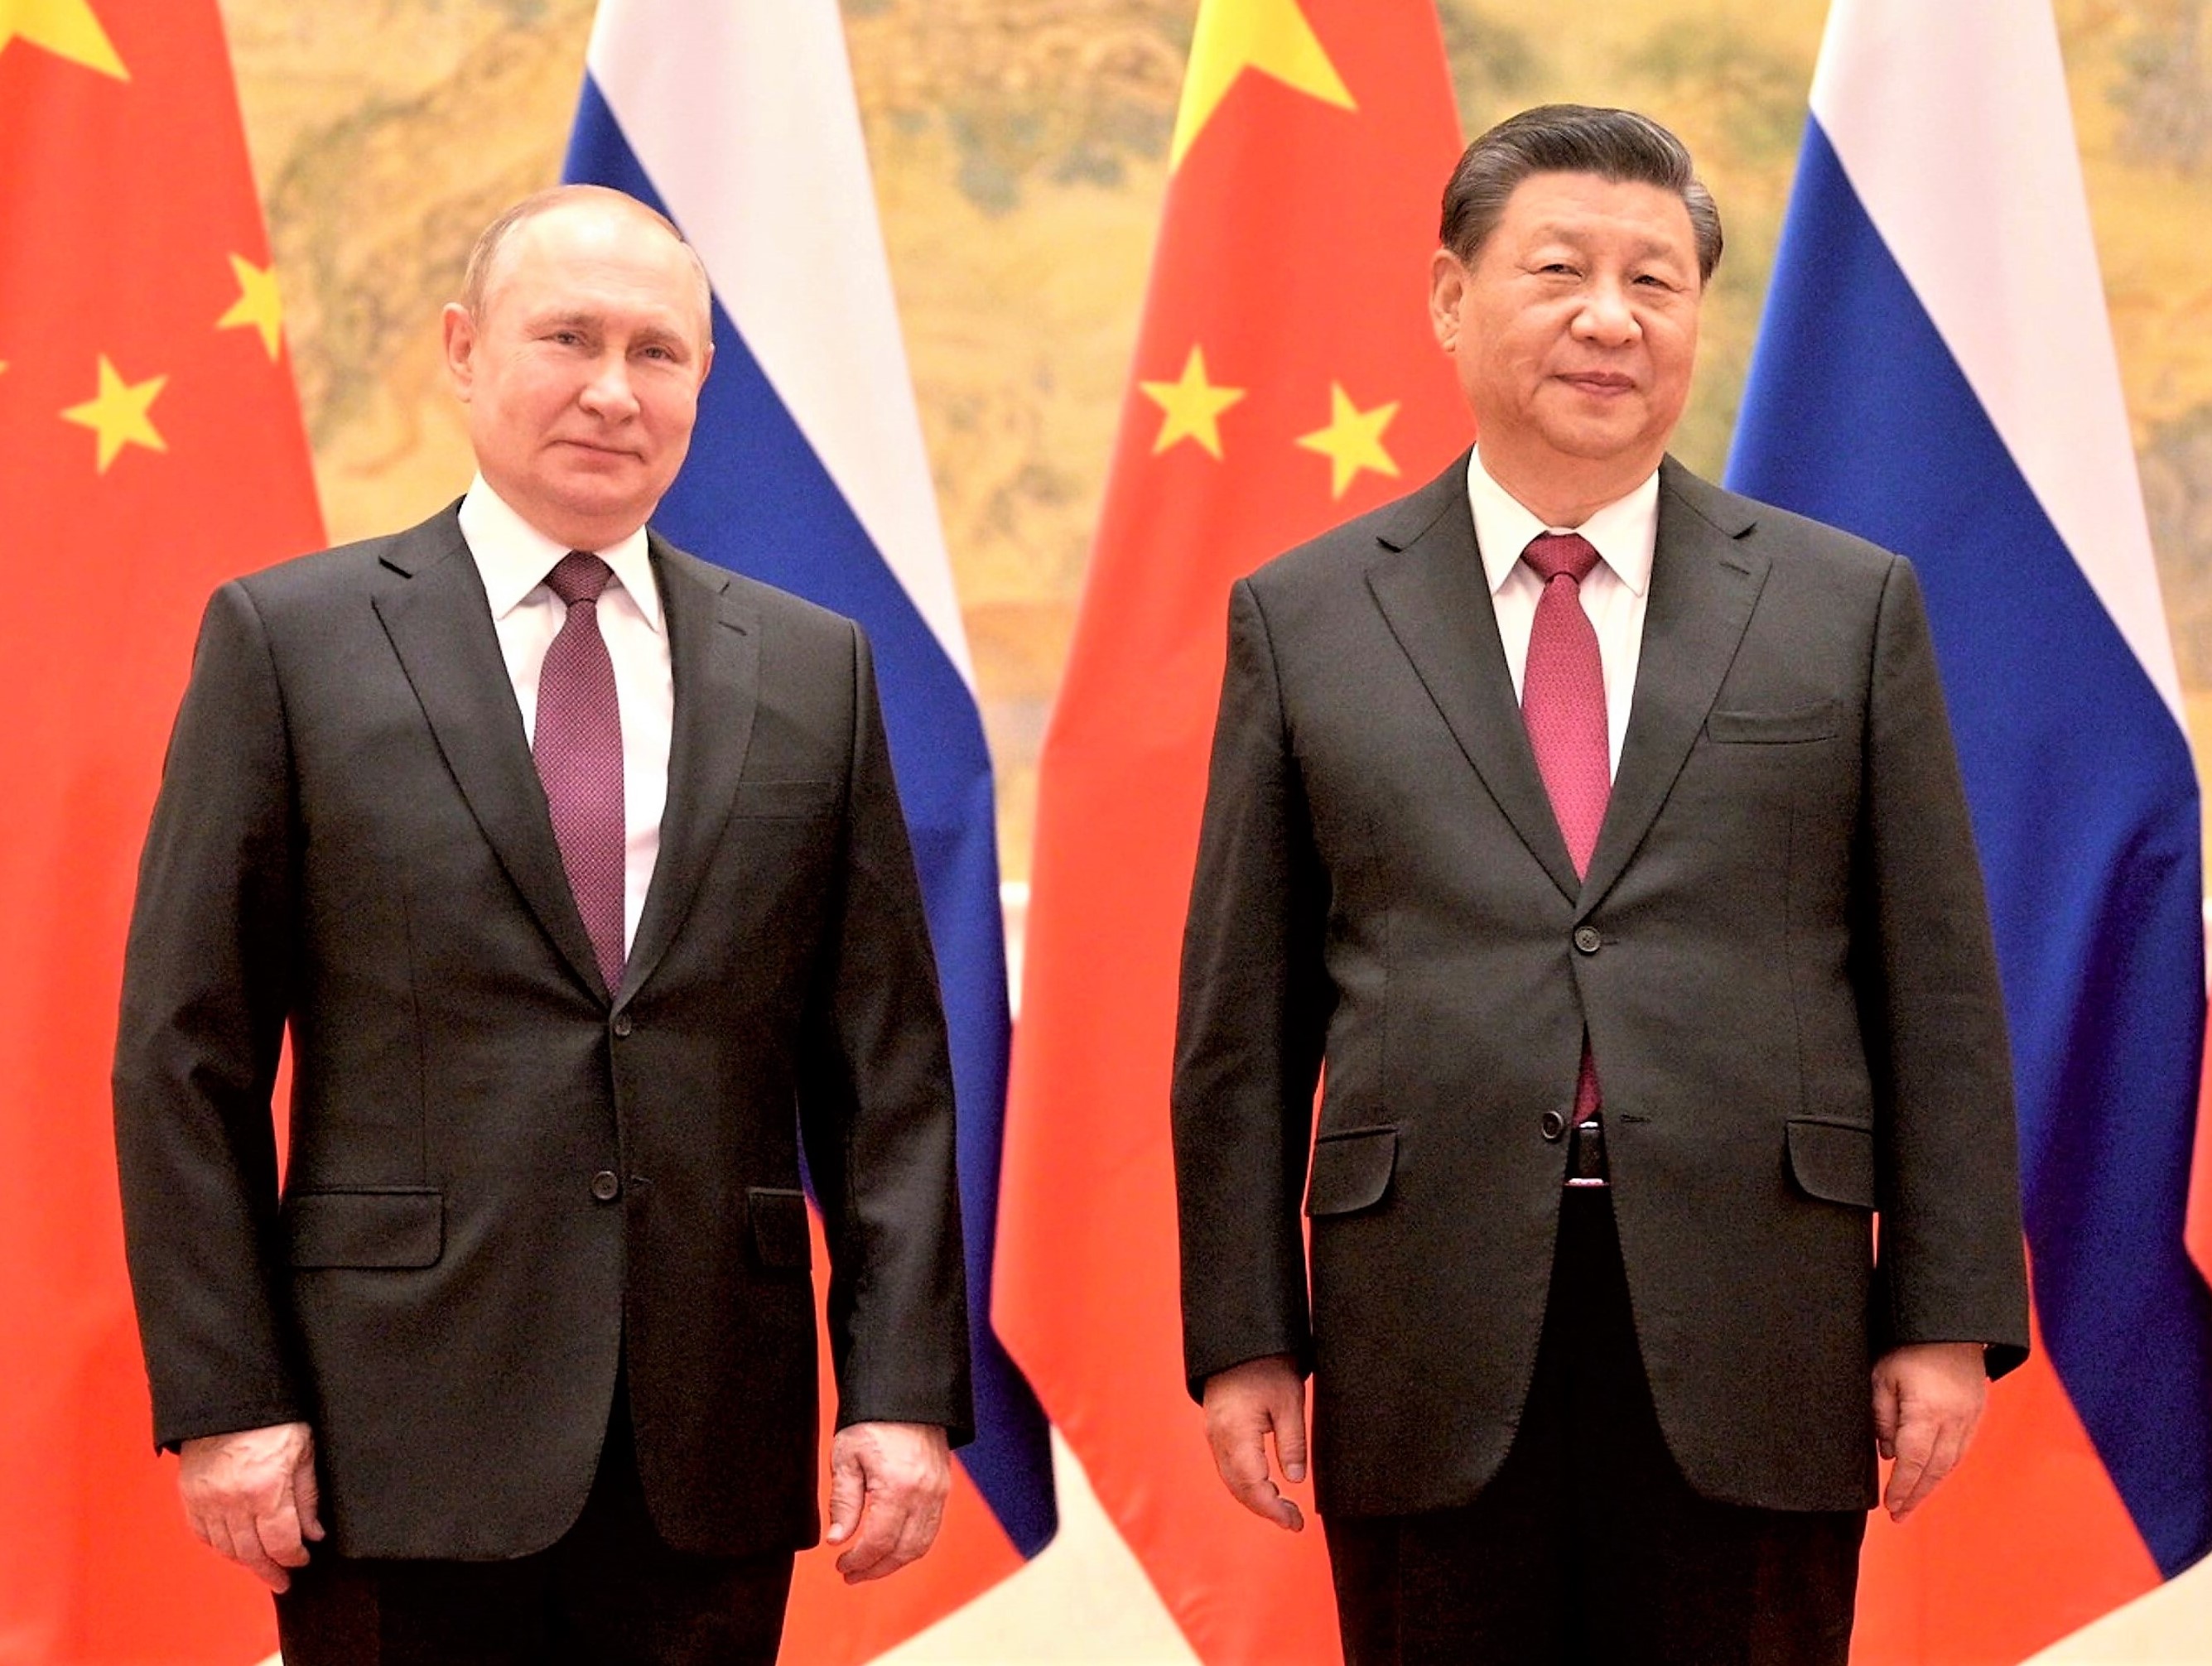 Lässt Xi Putin fallen? China bekommt kalte Füße wegen Putins Versagen an der Front